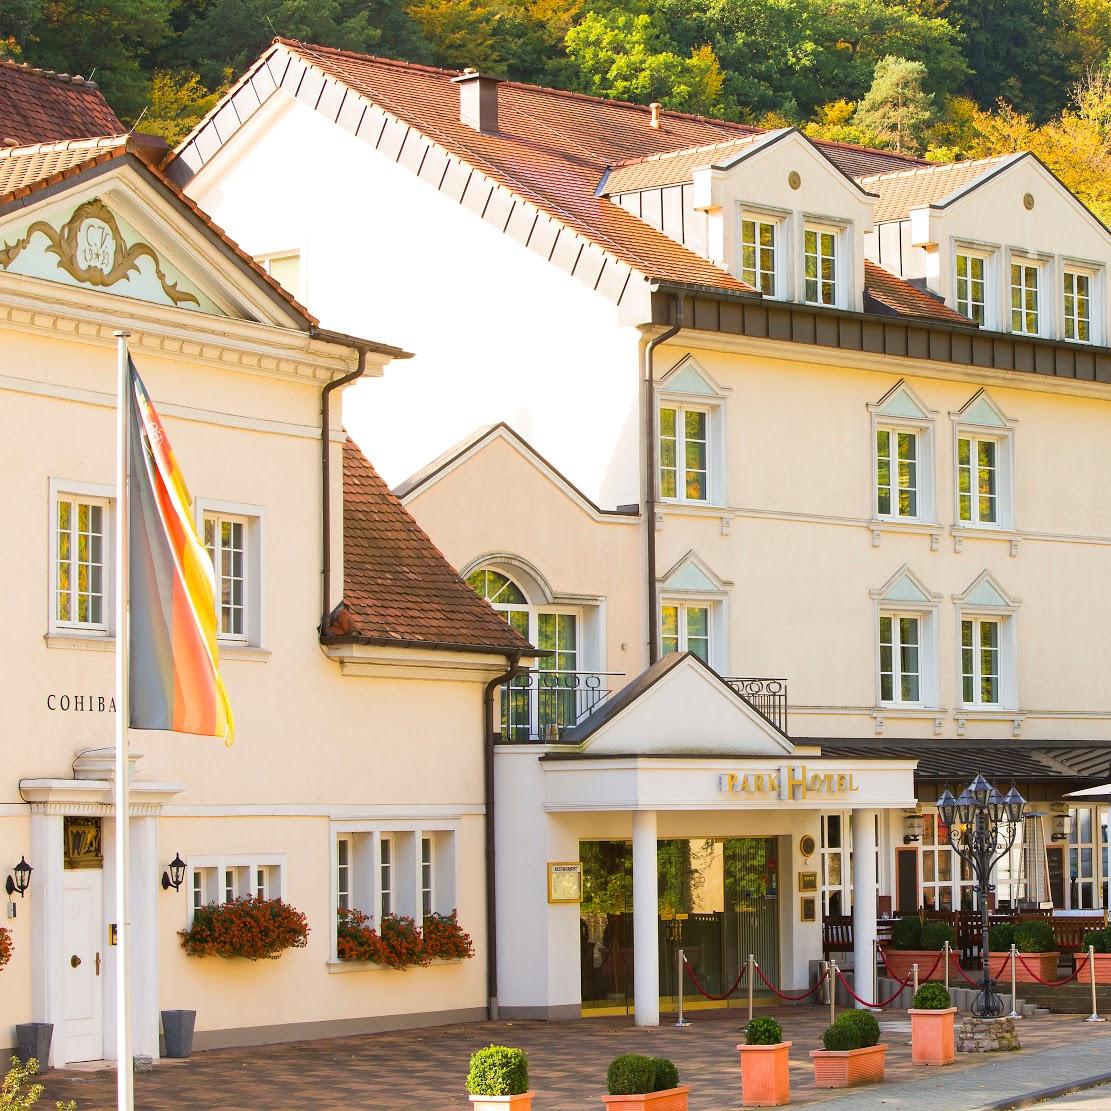 Restaurant "Parkhotel" in  Idar-Oberstein